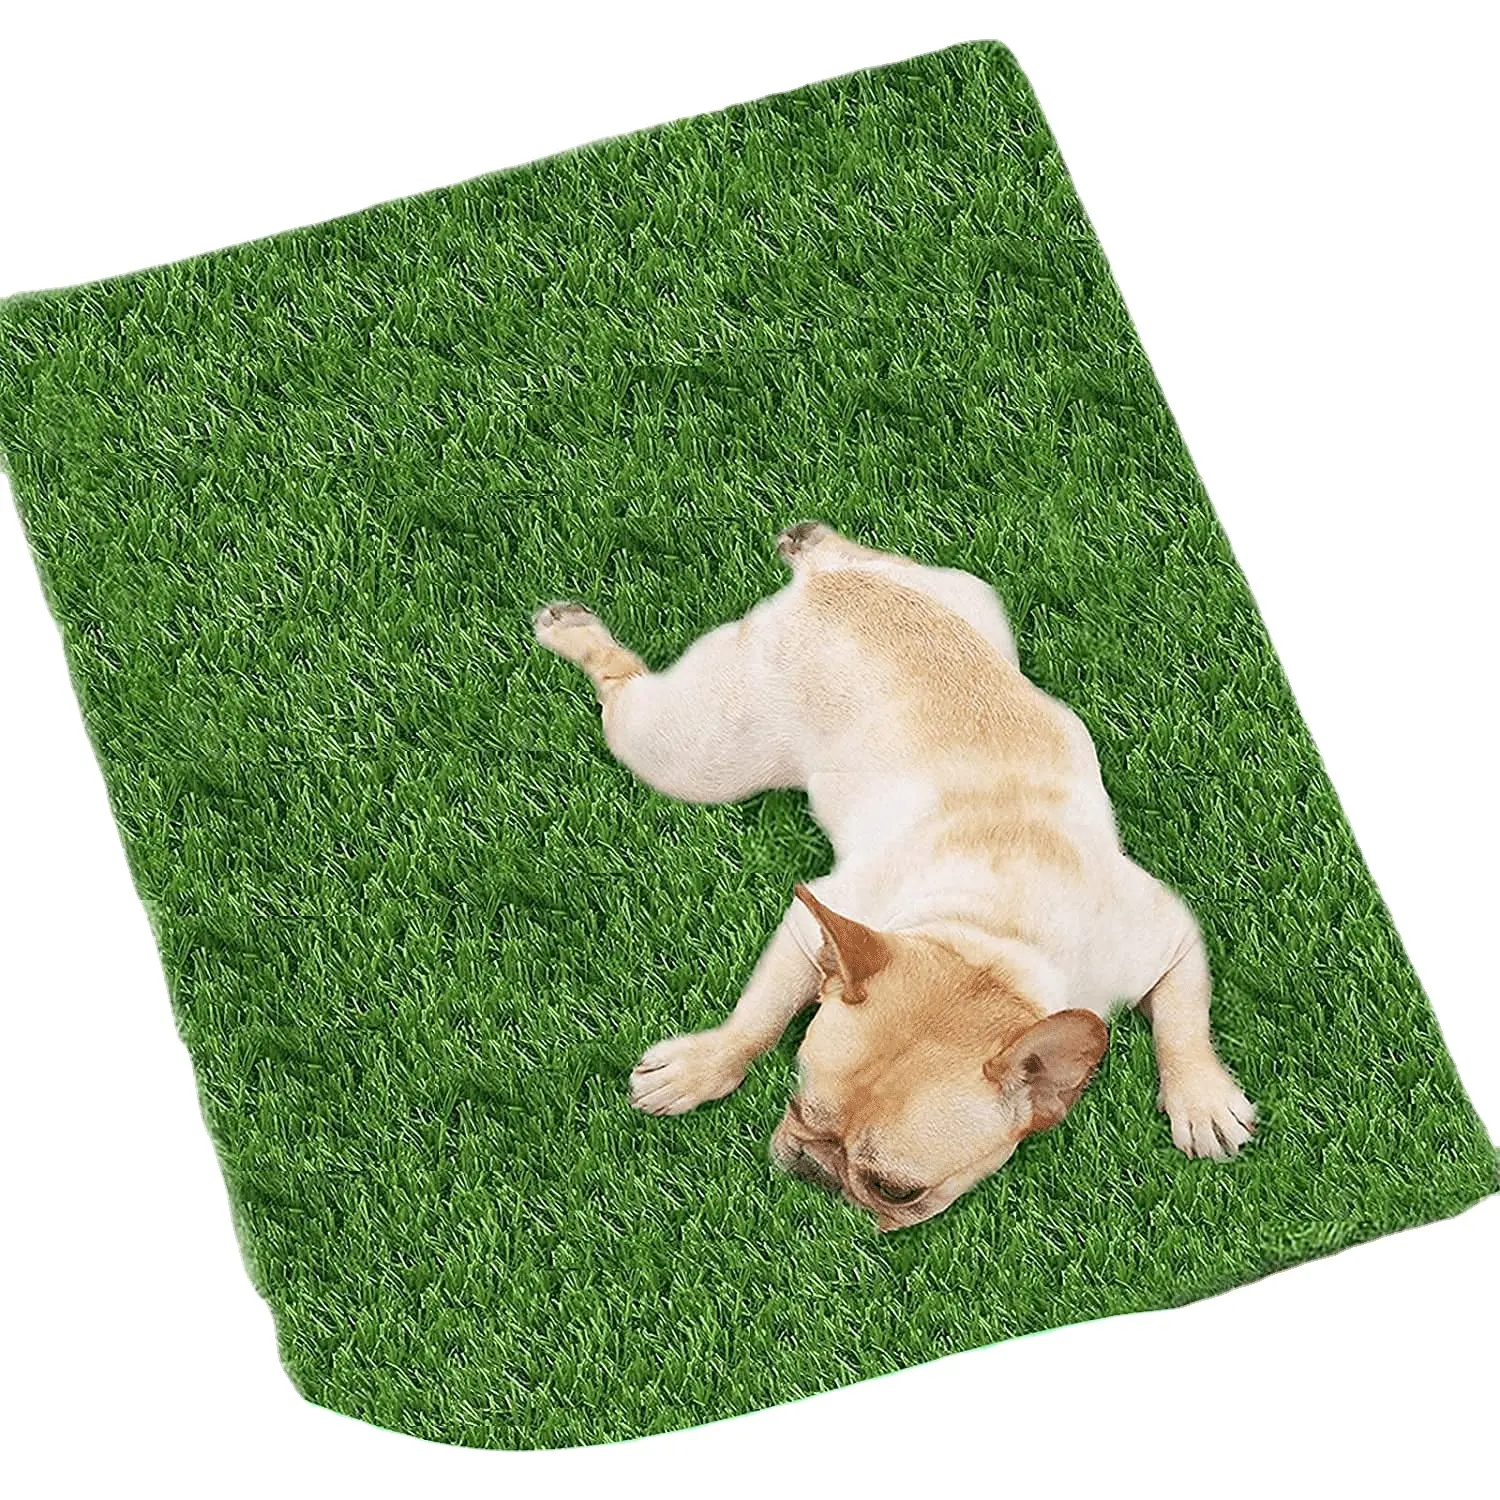 DBDMC merek rumput buatan karpet rumput untuk anjing dalam ruang luar rumput untuk anjing latihan toilet Area teras rumput dekorasi